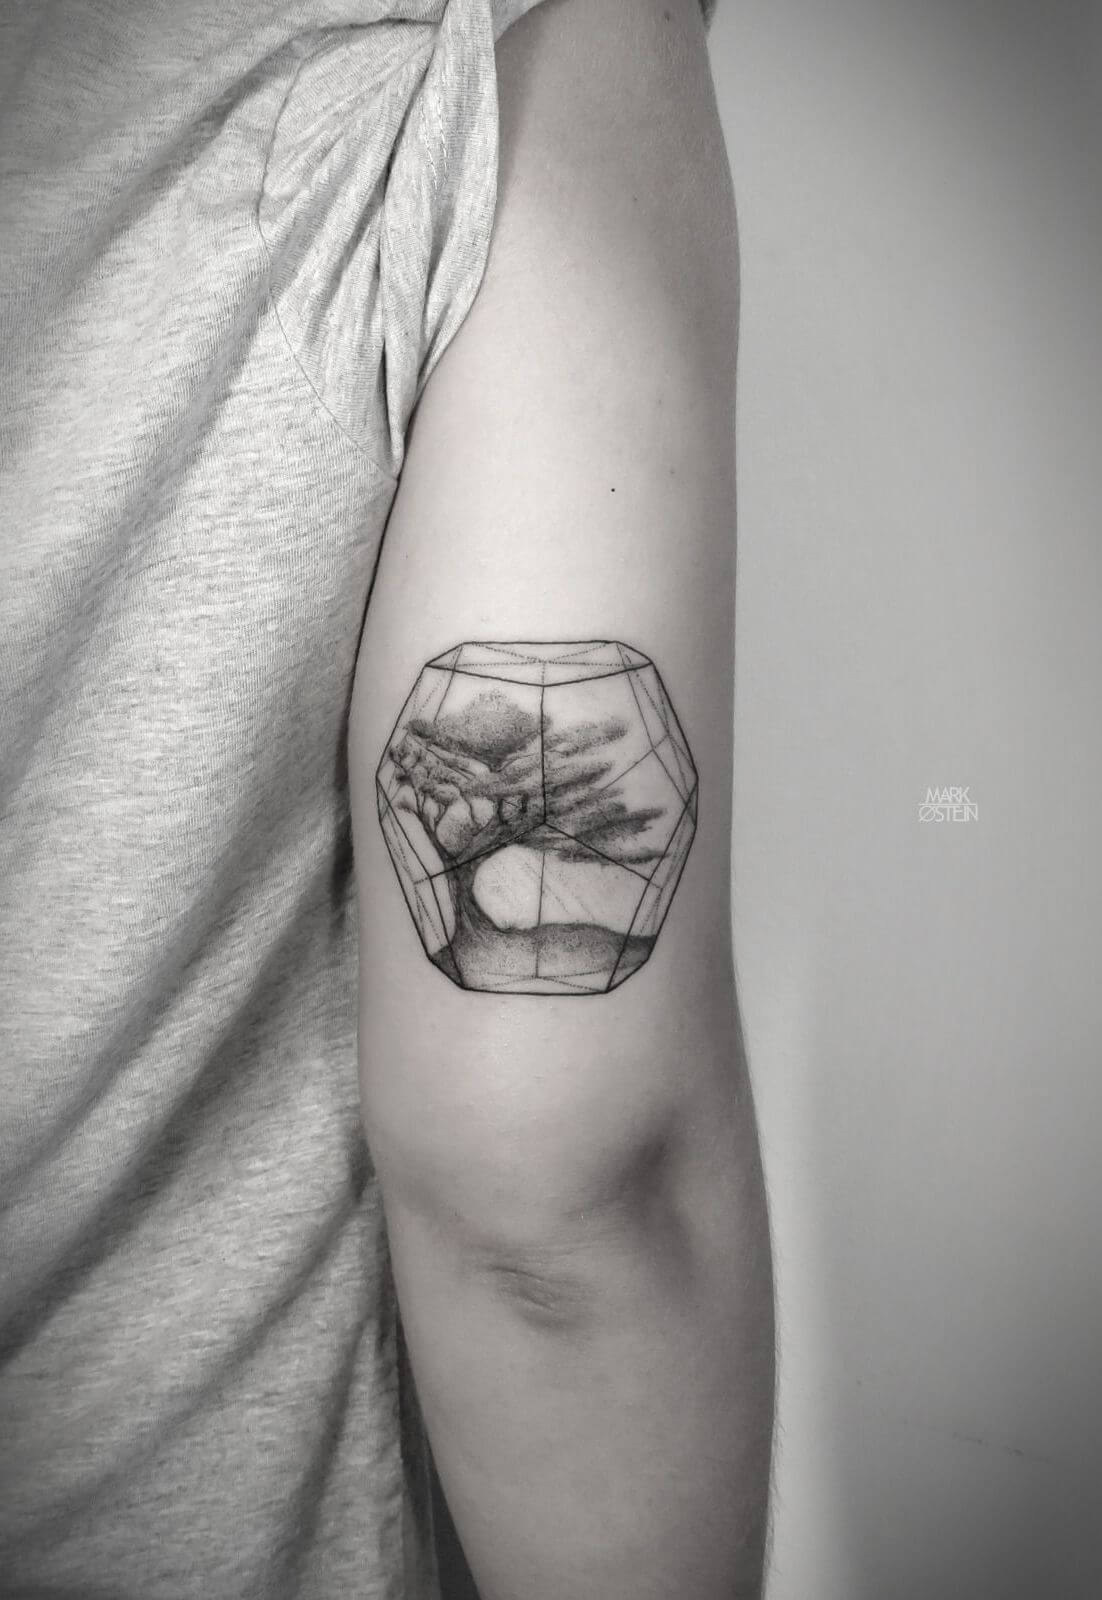 Minimalist geometric tattoos